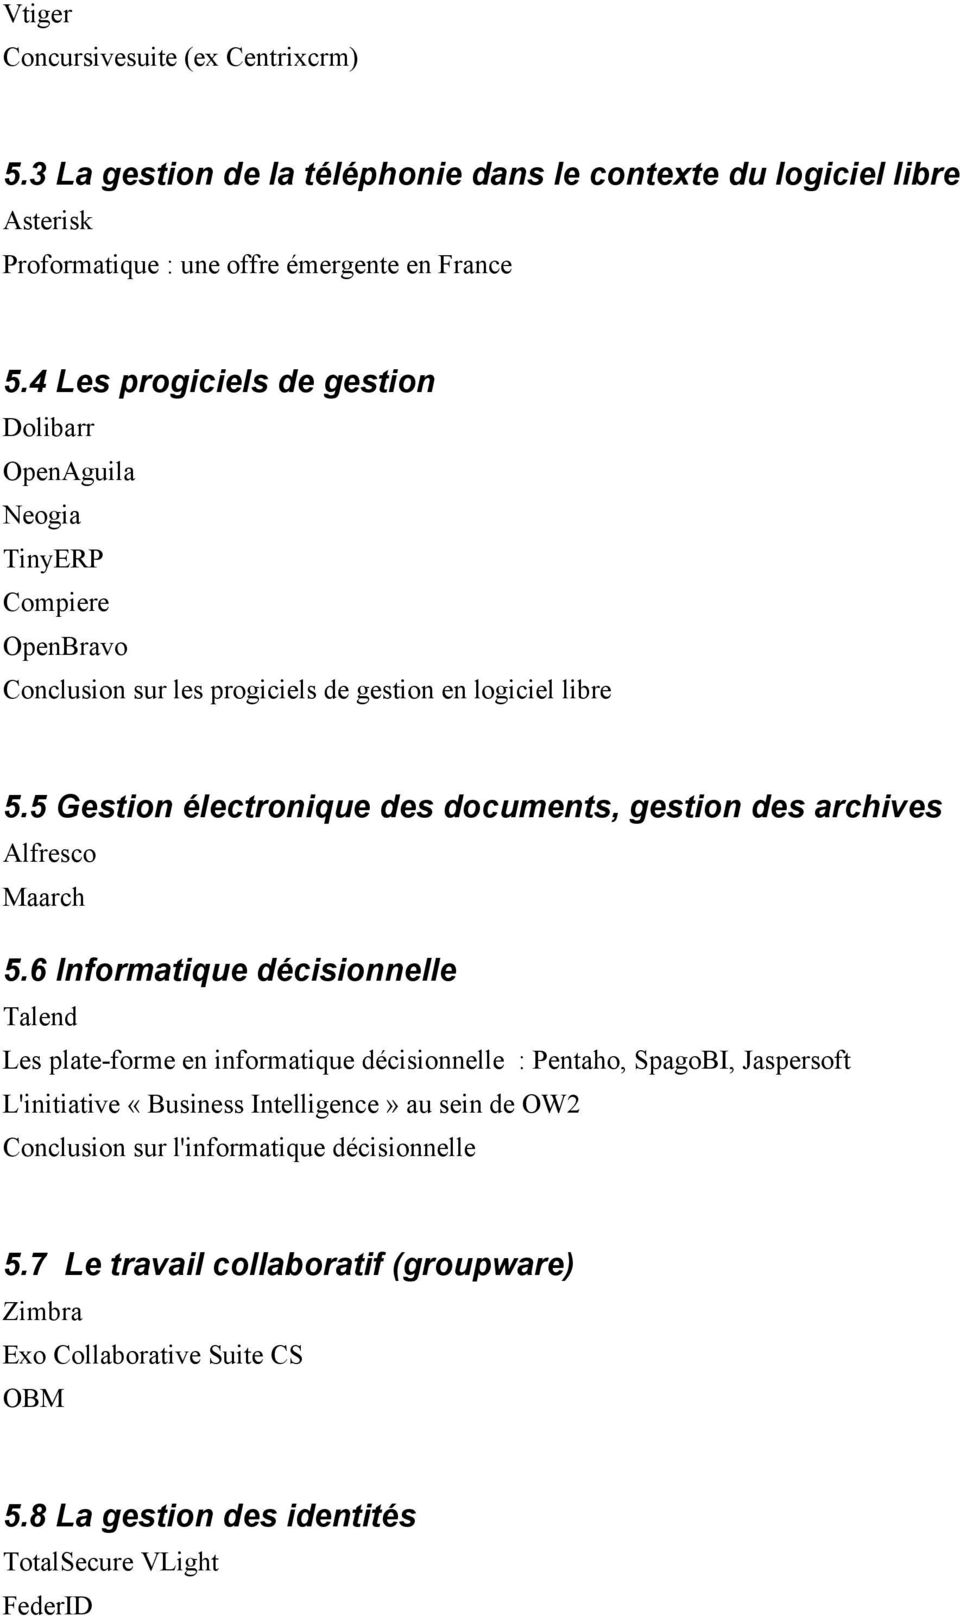 5 Gestion électronique des documents, gestion des archives Alfresco Maarch 5.